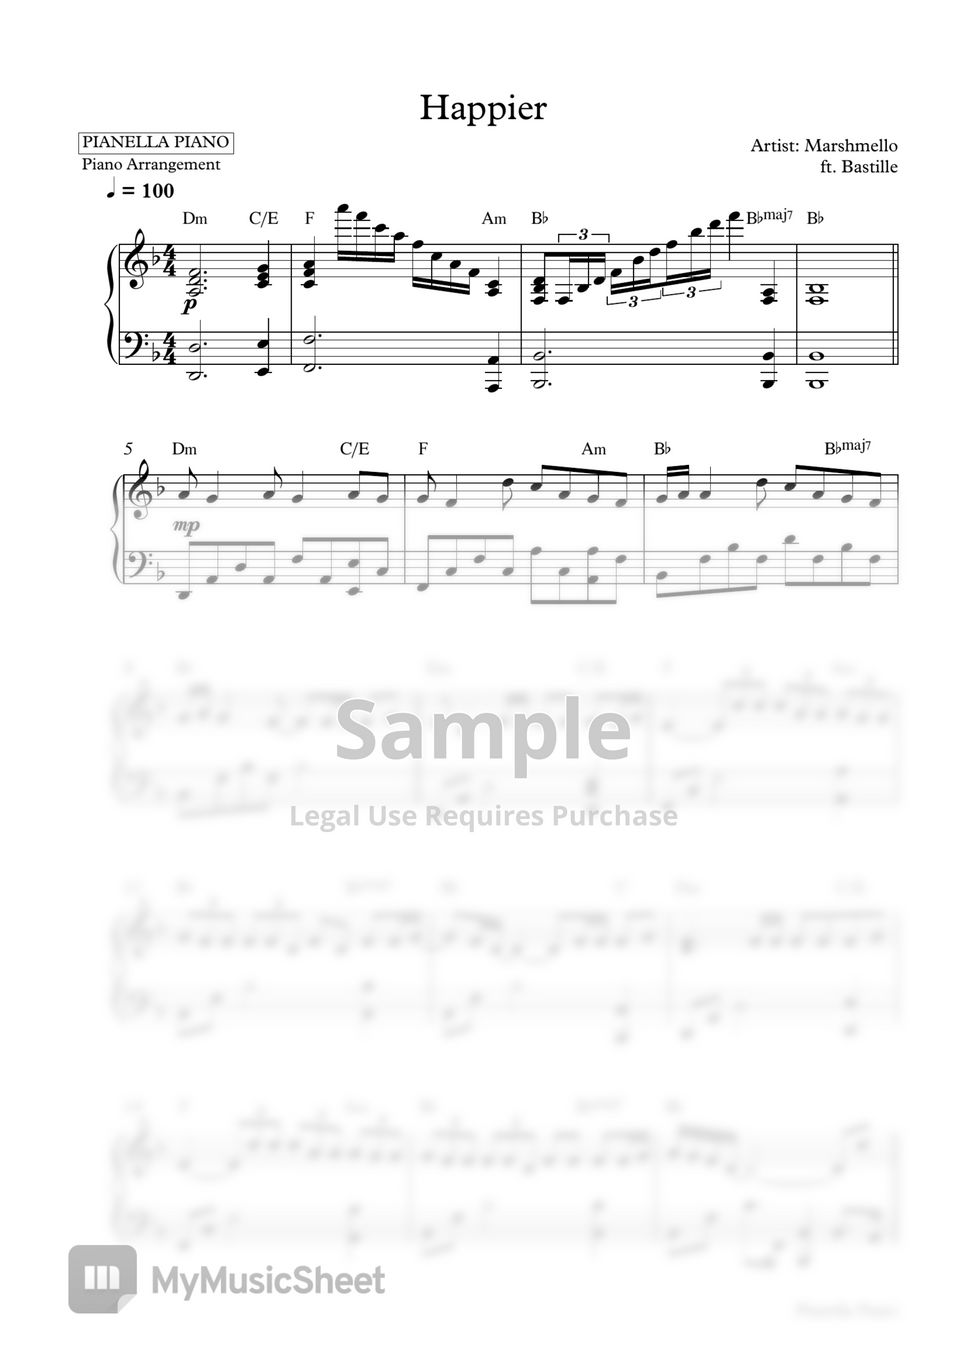 Marshmello - Happier (Piano Sheet) by Pianella Piano